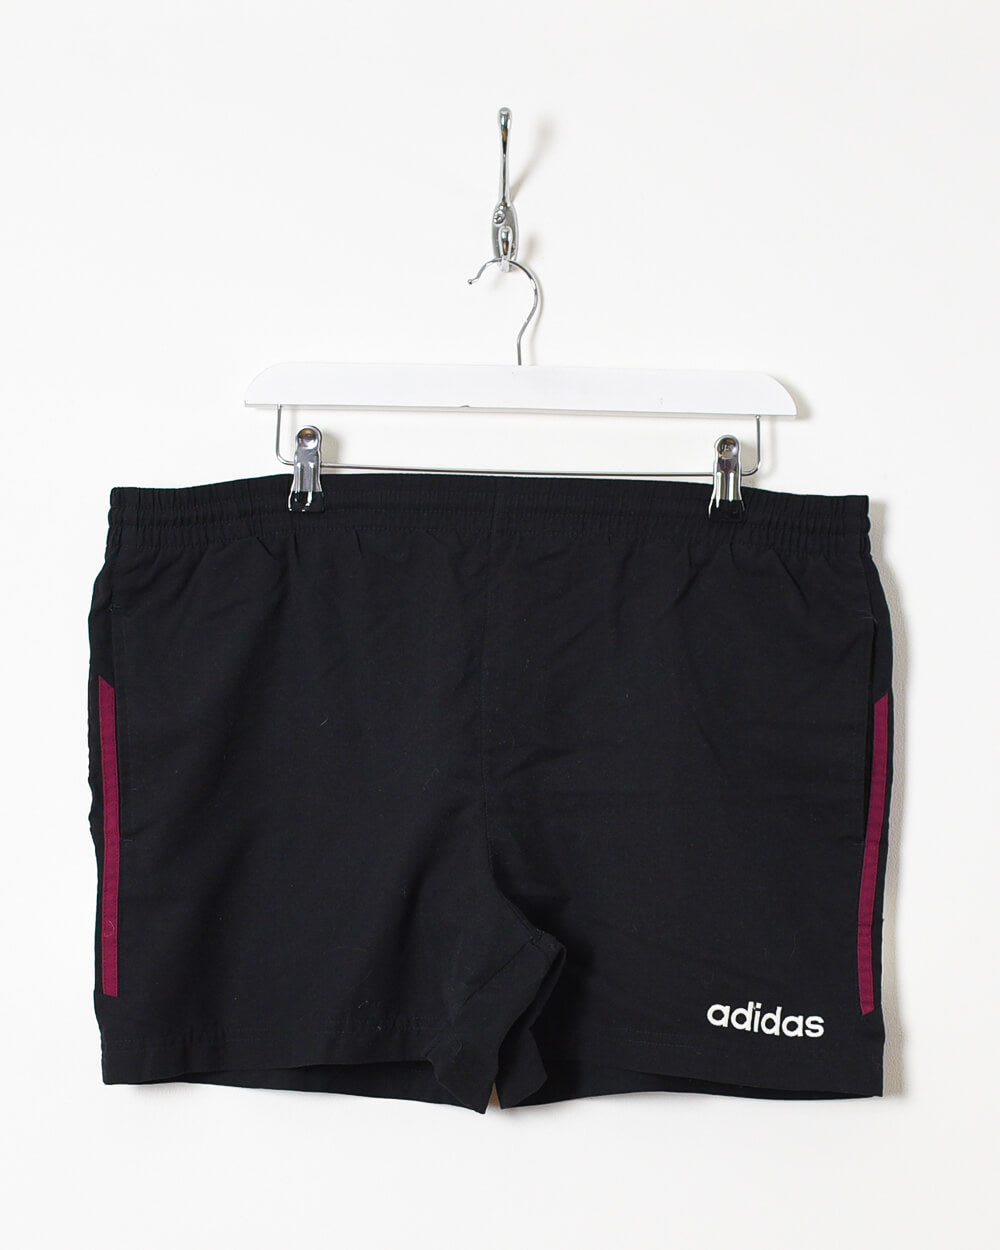 Black Adidas Shorts - W36